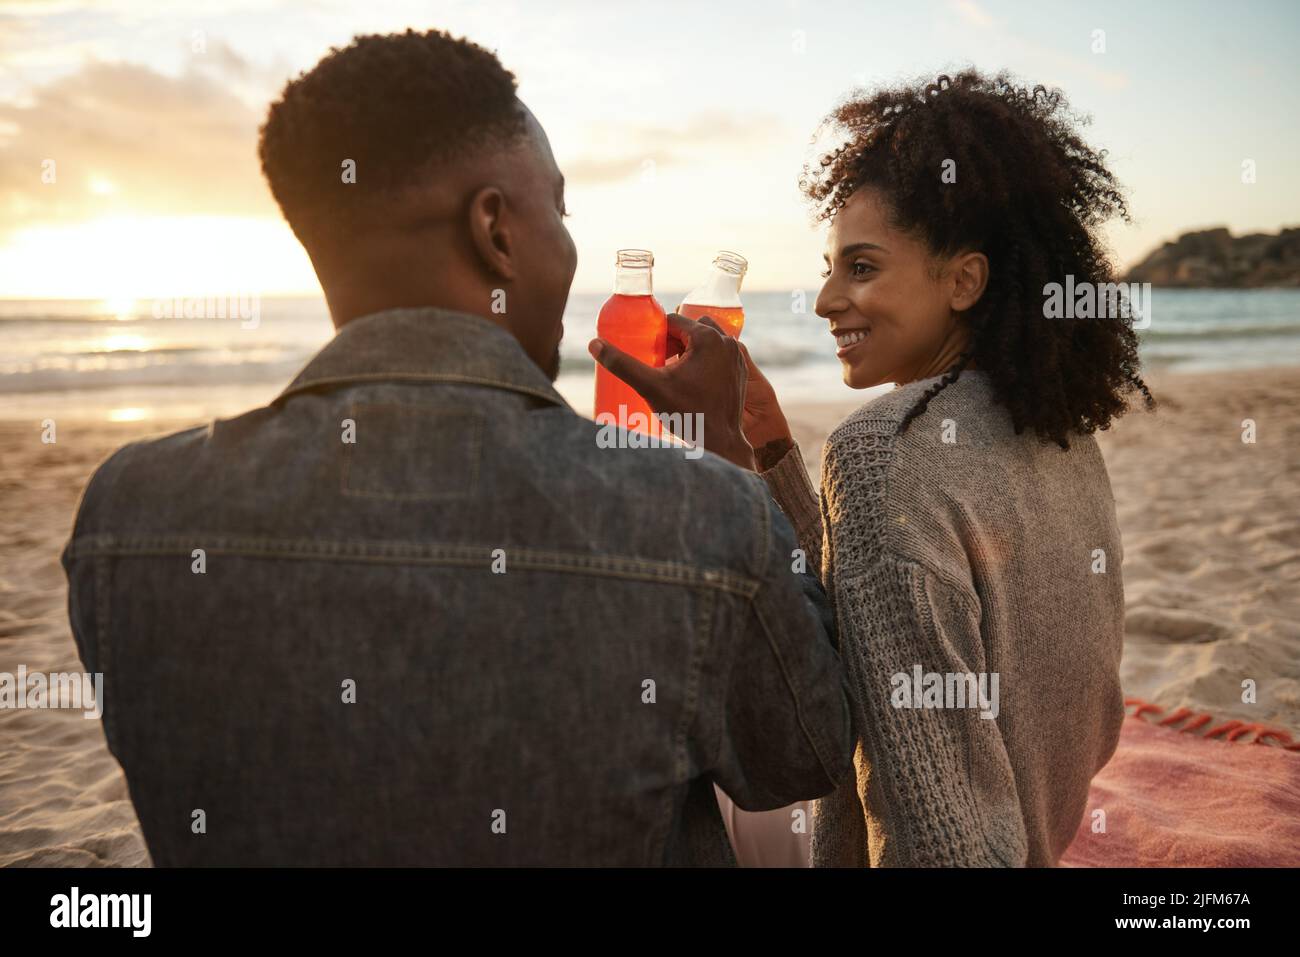 Un jeune couple multiethnique souriant boit du jus sur une plage de sable au coucher du soleil Banque D'Images